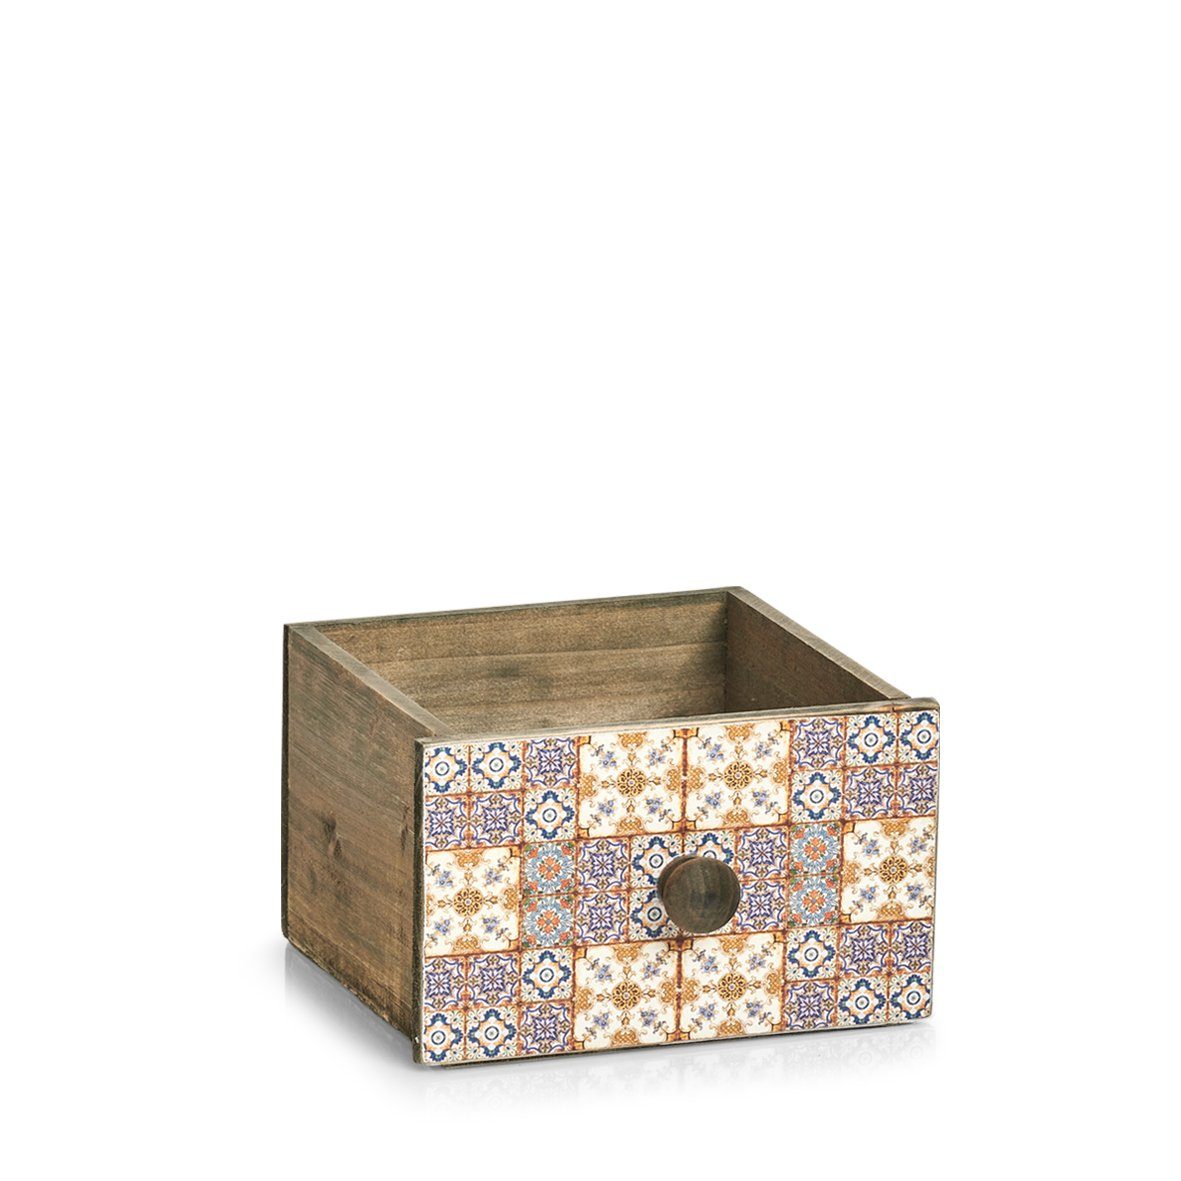 "Mosaik, Schubladenbox Aufbewahrungskorb Holz Zeller Present